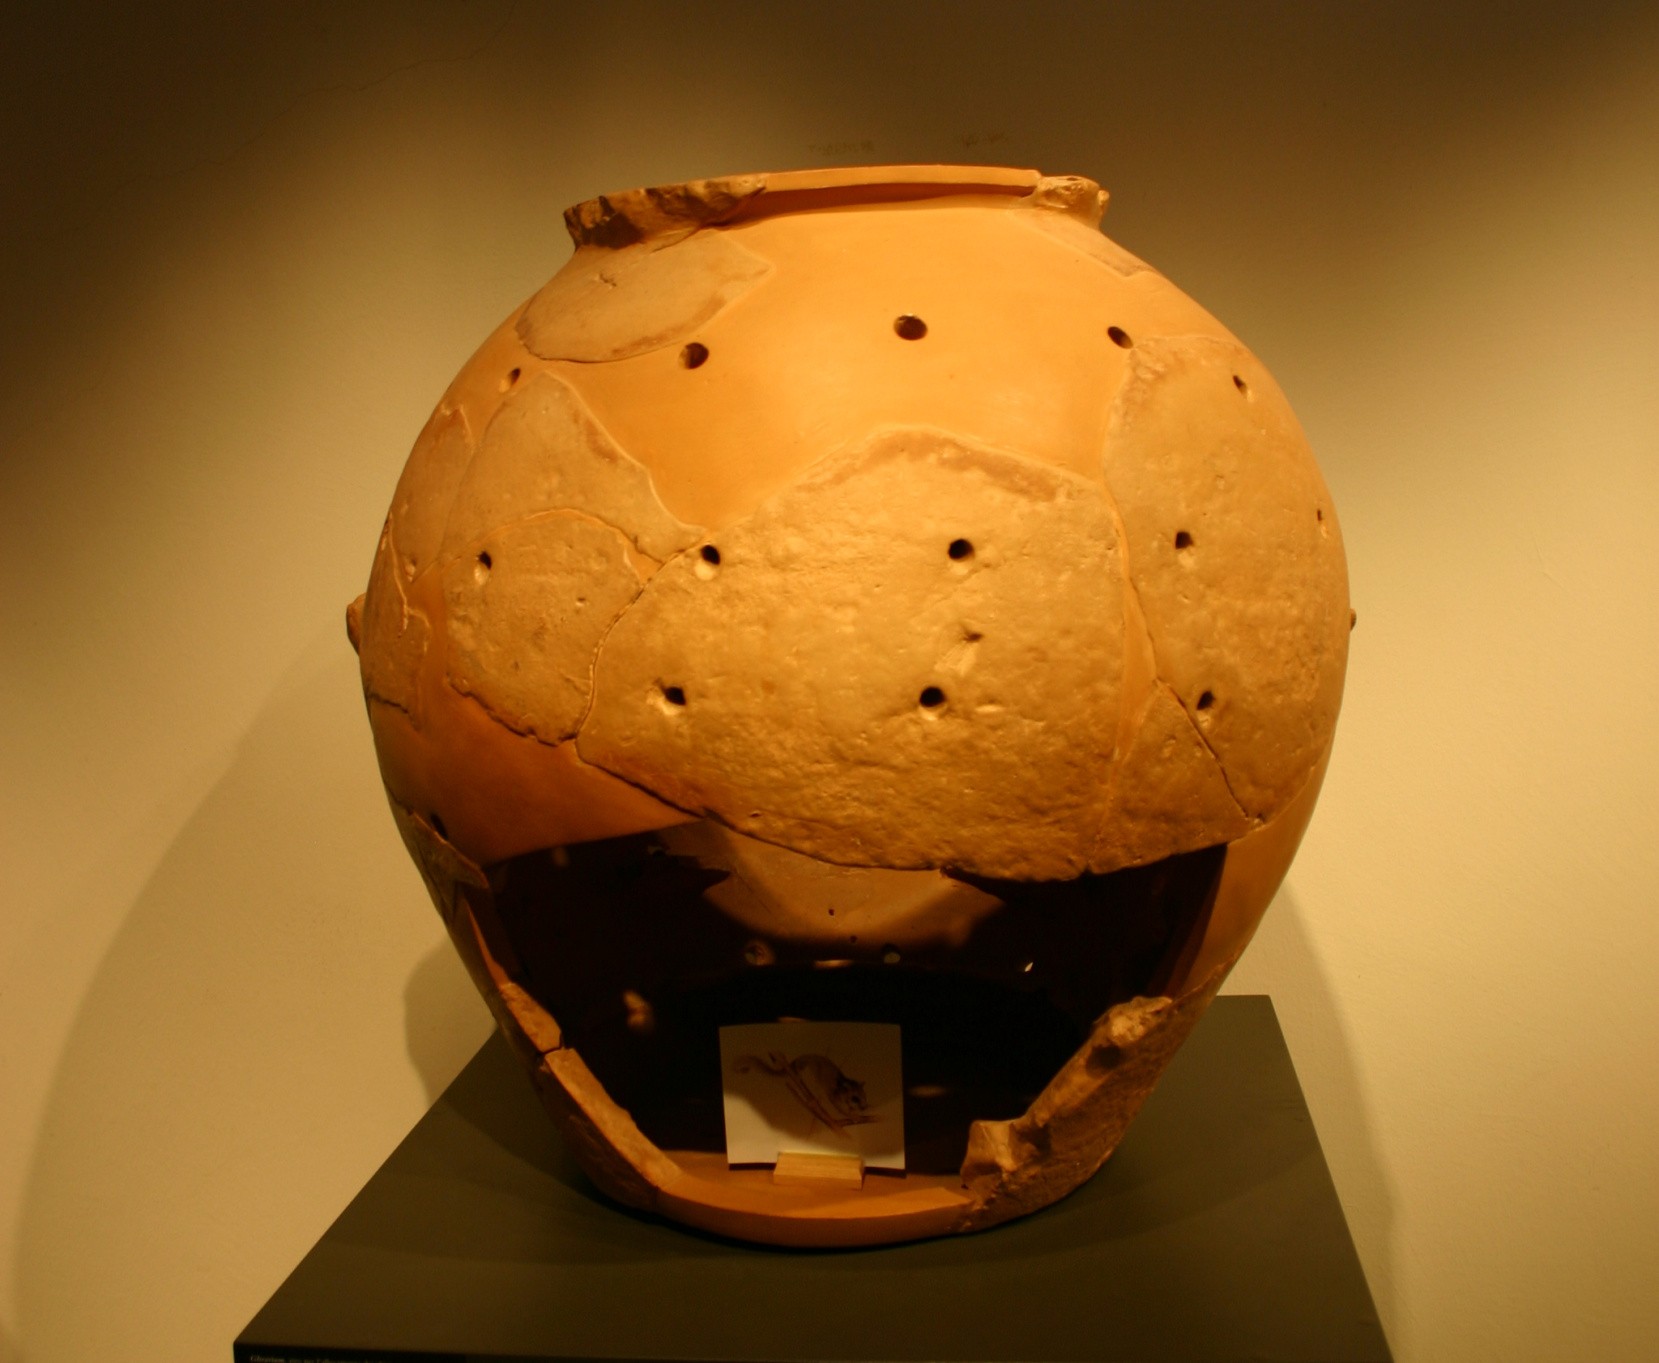 Glirarium là một thùng chứa bằng đất nung dùng để đựng ký sinh trùng ăn được. Những con vật này được coi là món ngon trong thời kỳ Etruscan và sau đó là Đế chế La Mã.